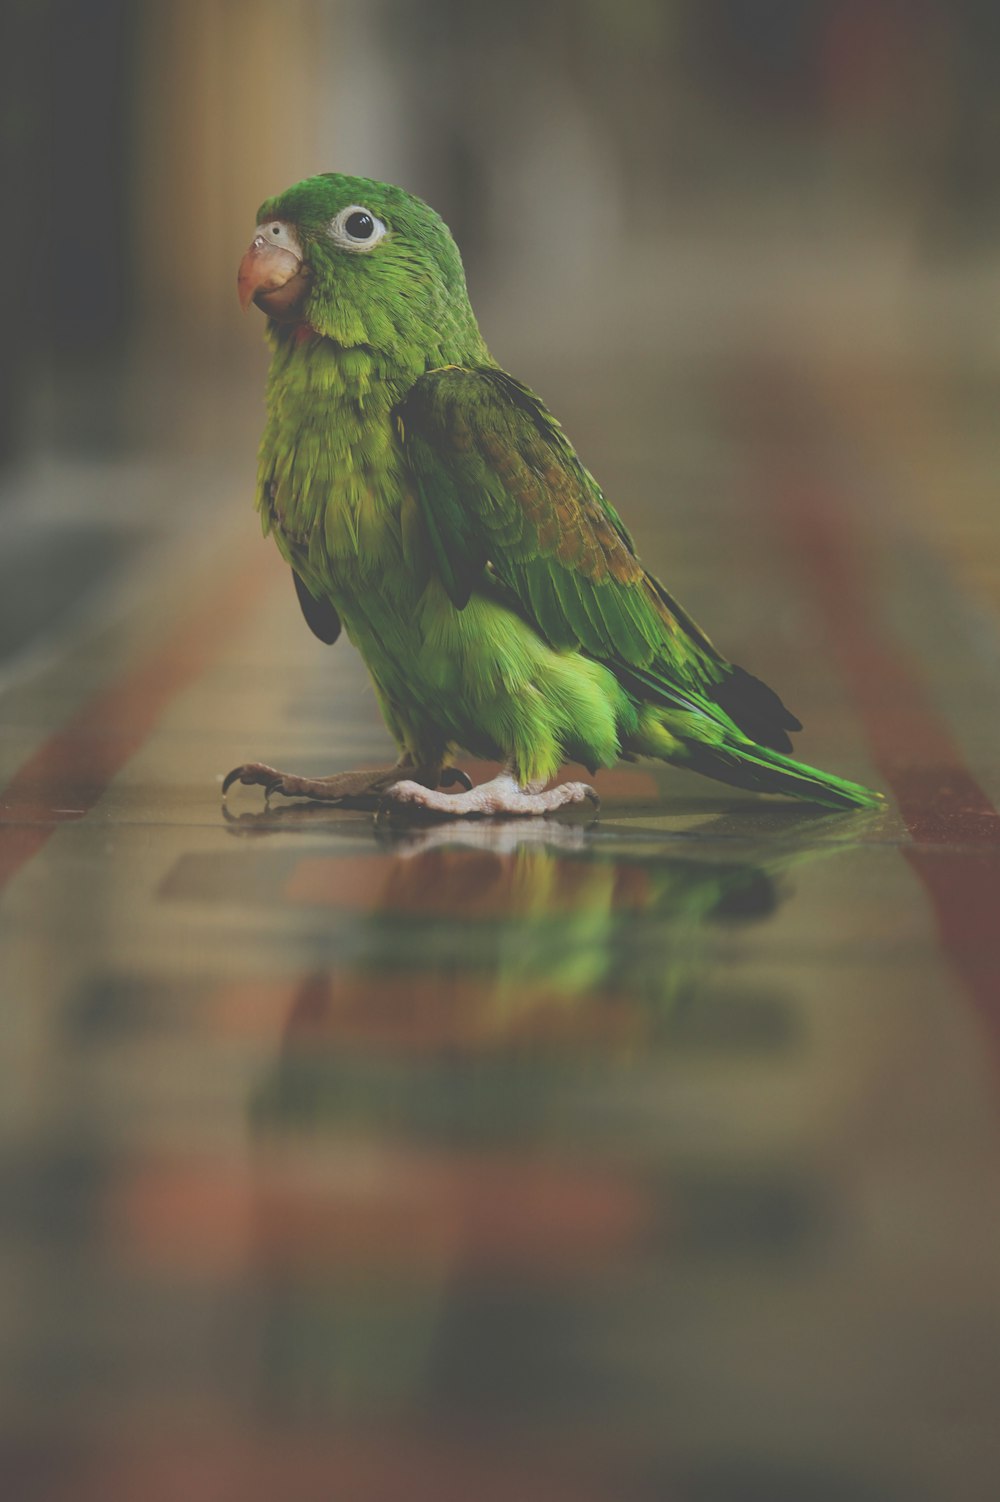 oiseau vert debout sur une surface brune